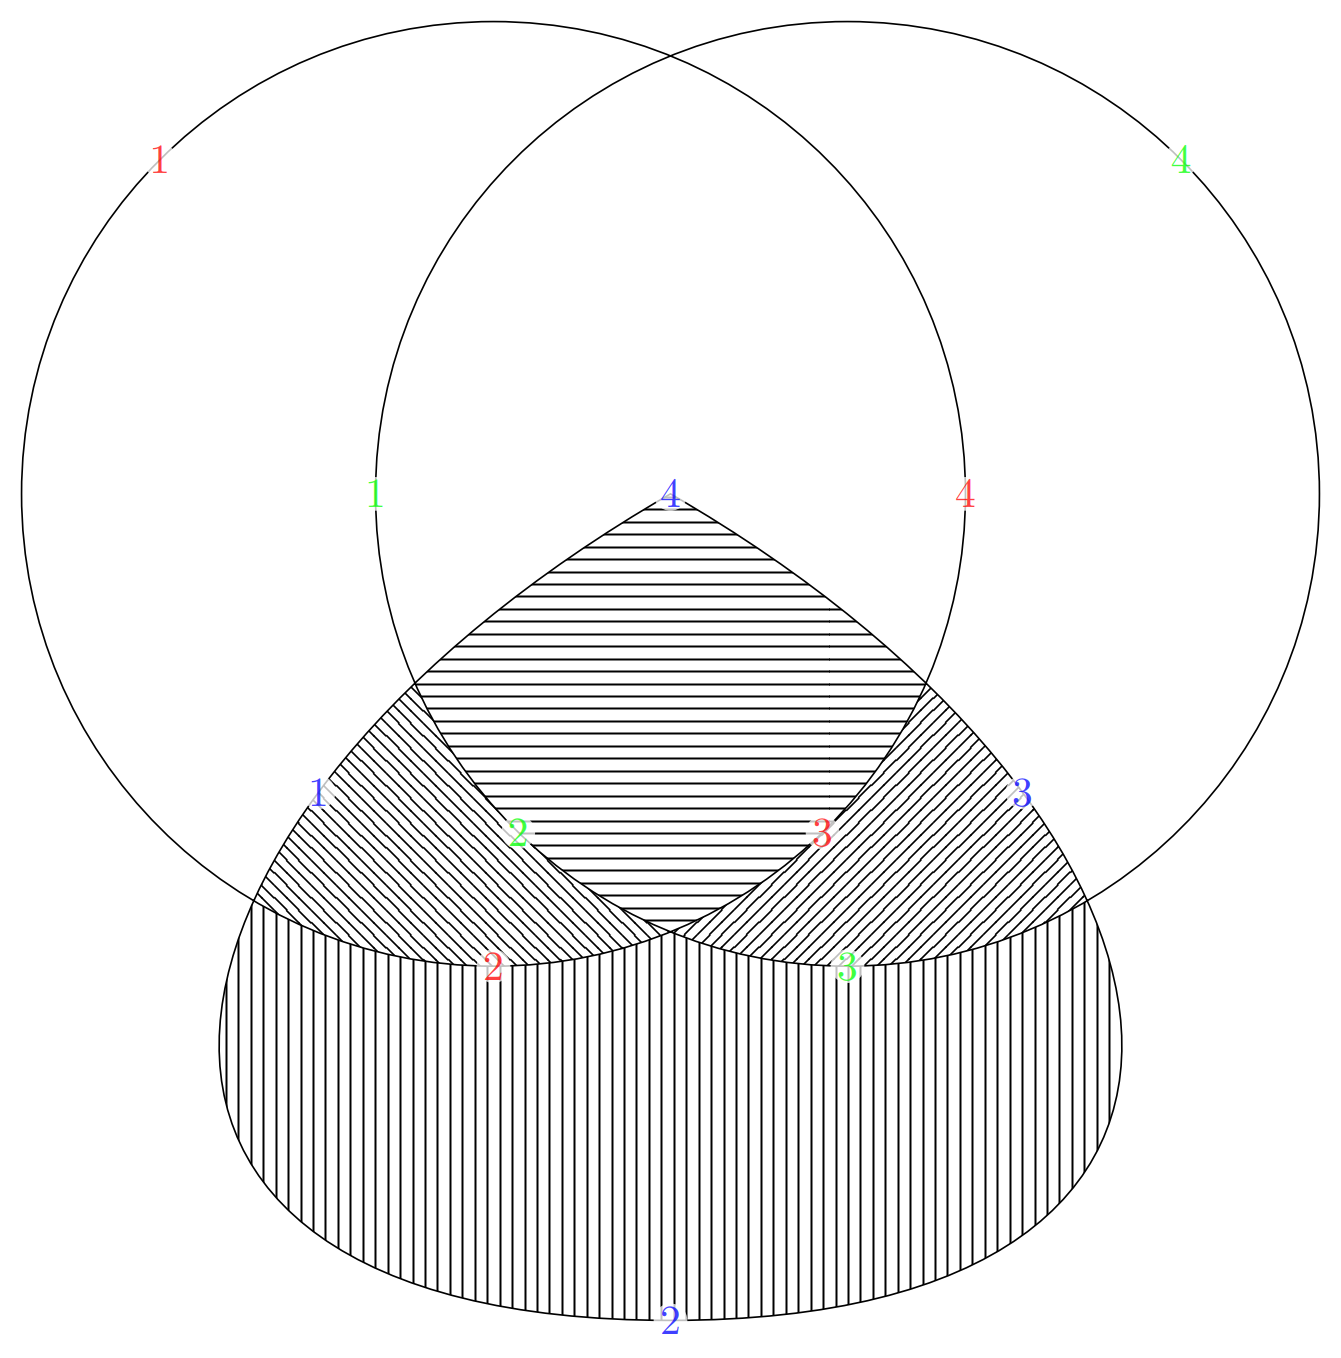 TikZ 绘制带有图案填充交叉点的圆和曲线图